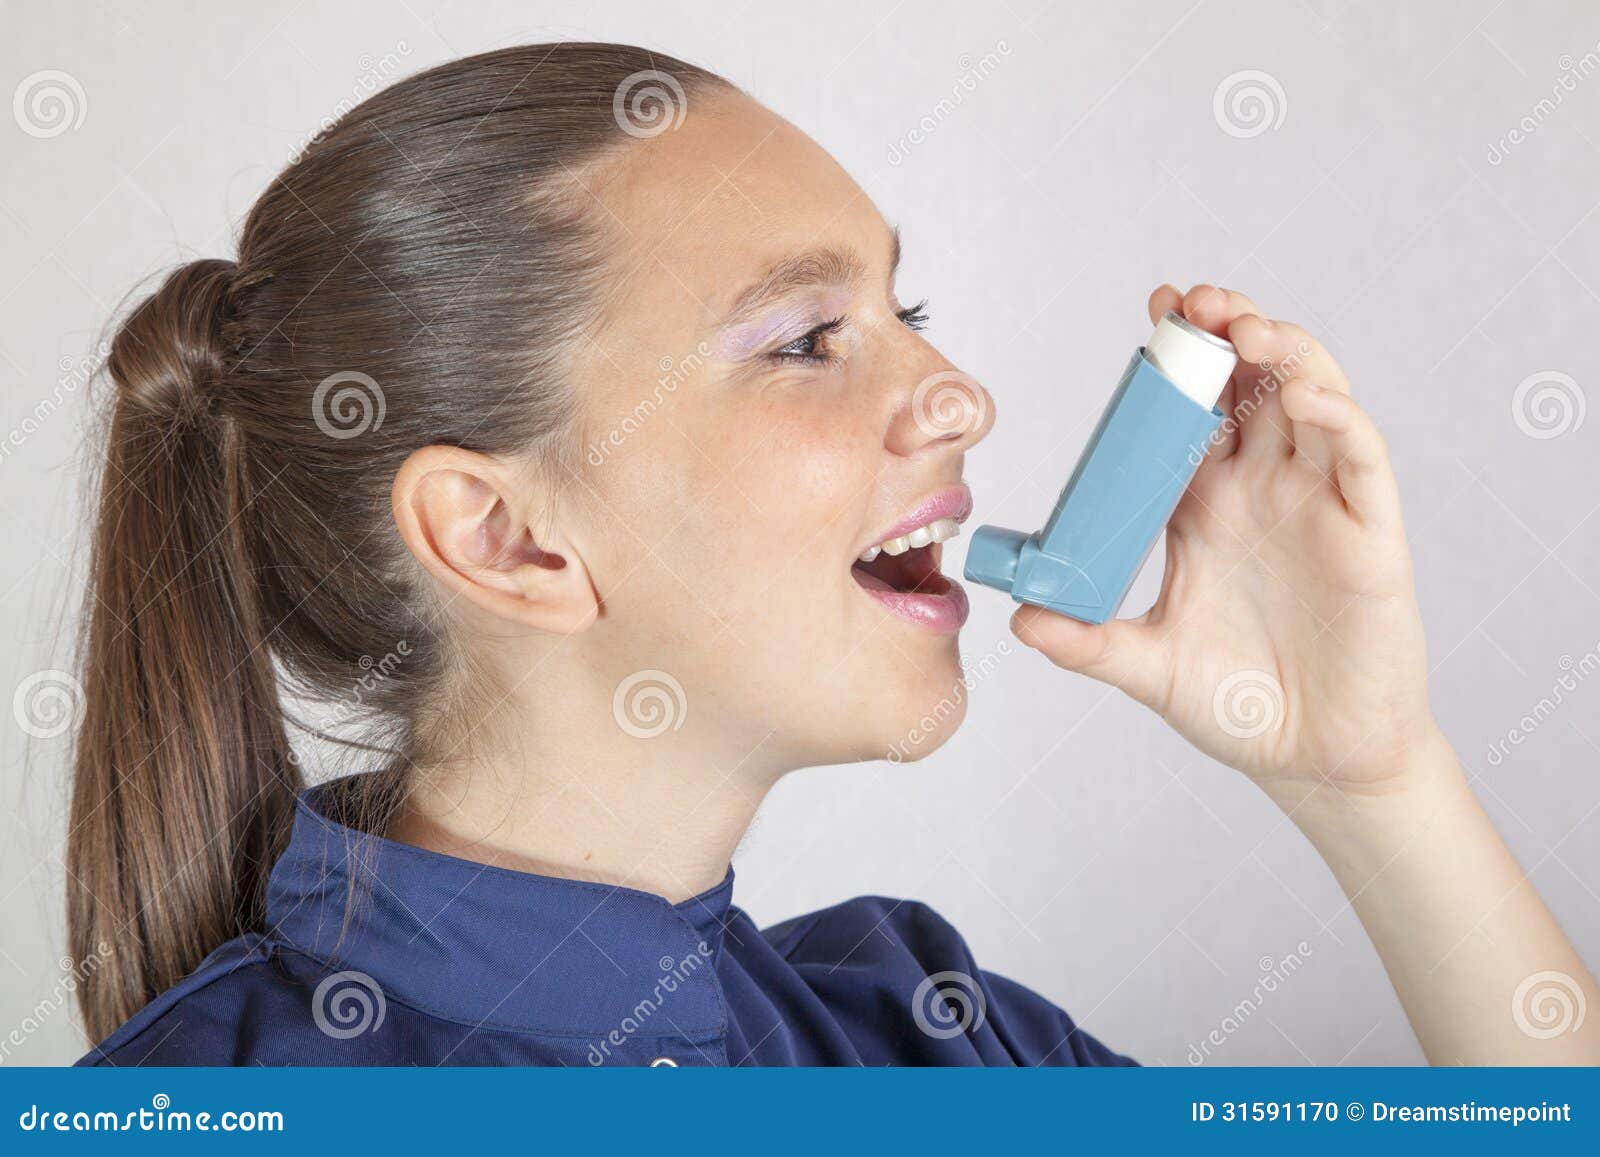 Панель астма. Ингалятор астма. Девушка с ингалятором. Девушка с небулайзером. Человек с ингалятором от астмы.